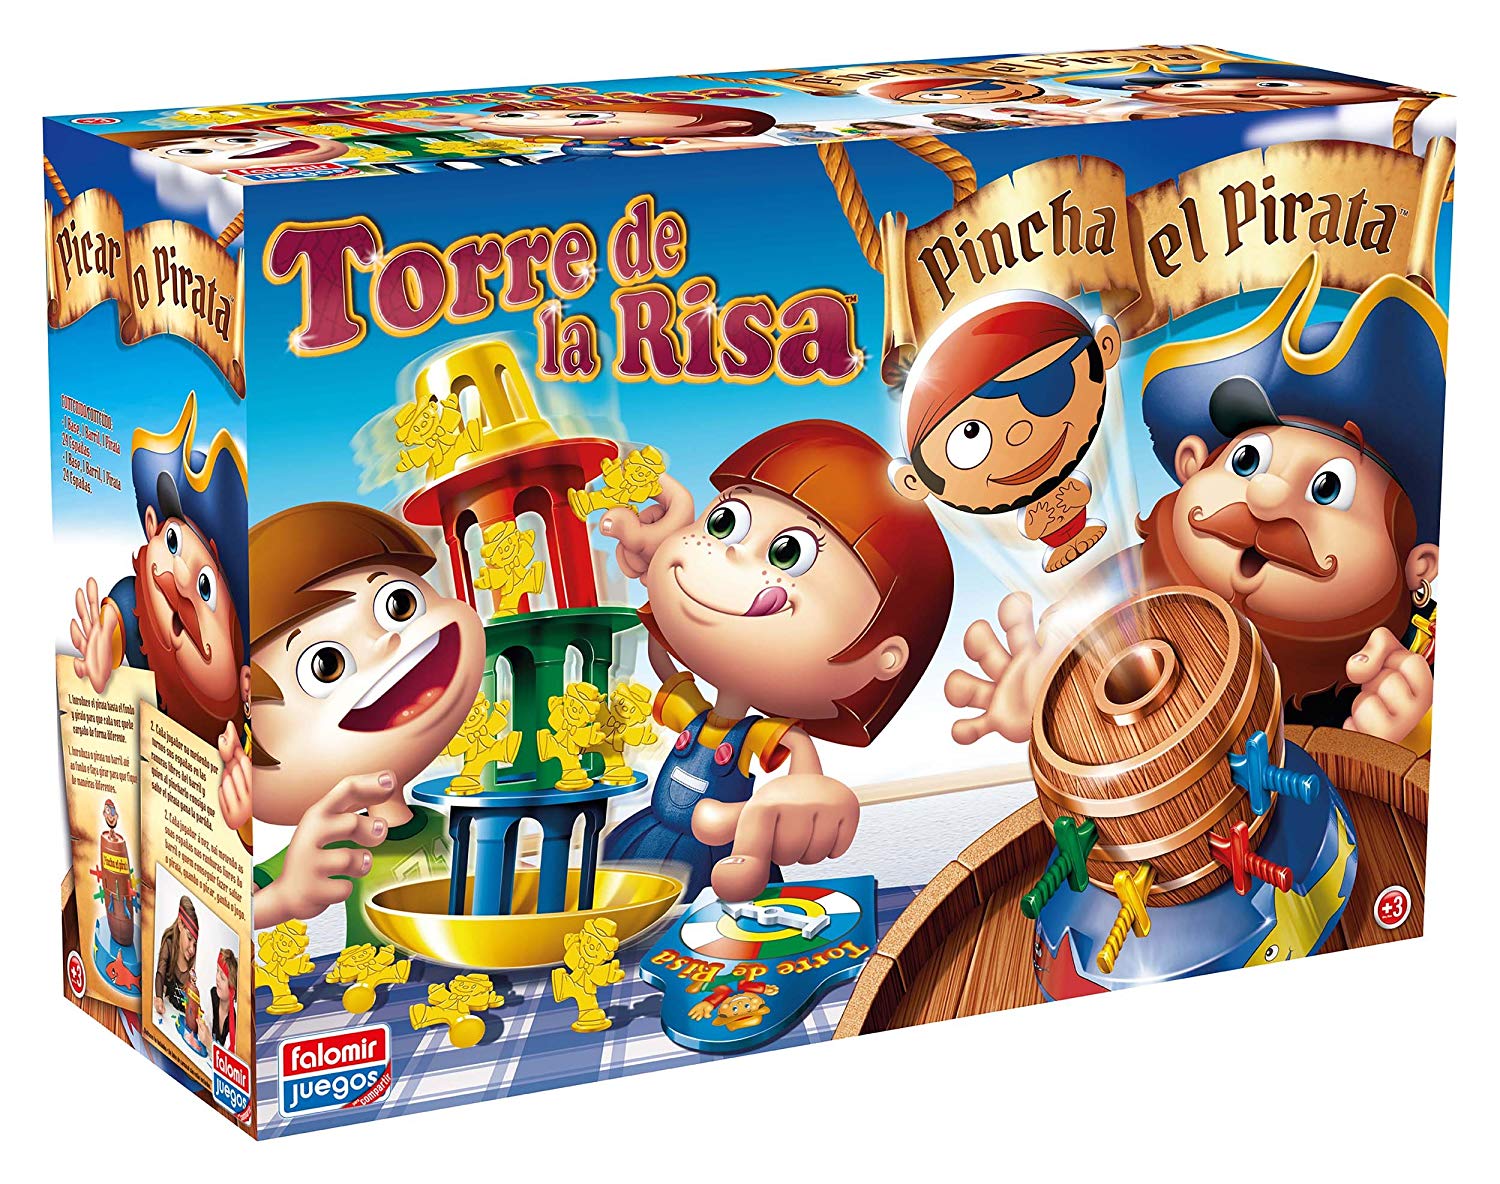 PINCHA PIRATA + TORRE DE LA RISA 7777 - N7923